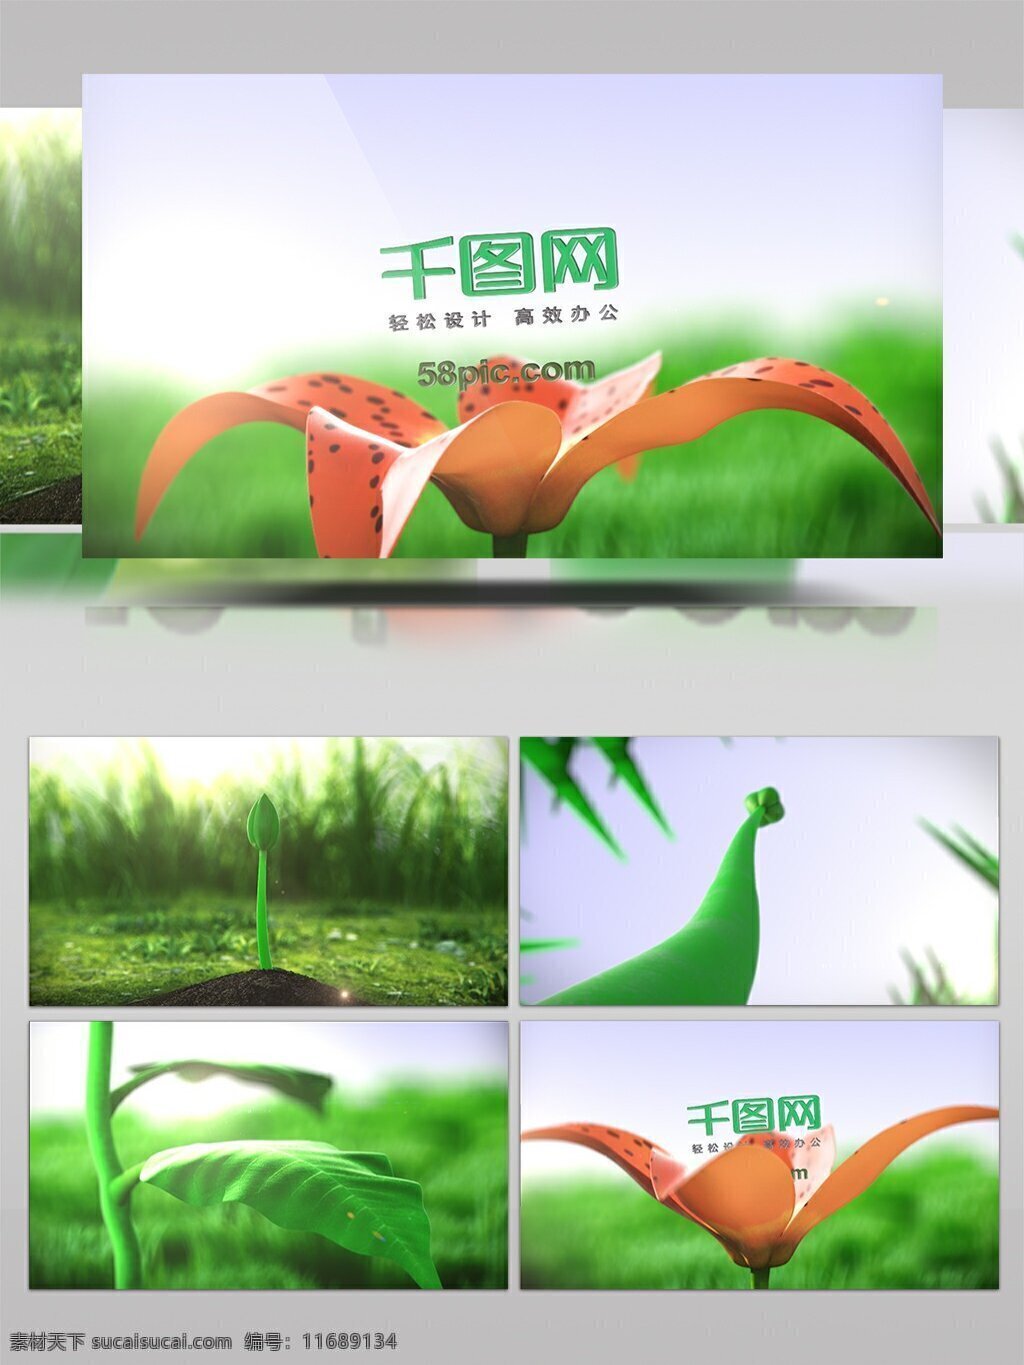 种子 幼苗 生长 开花 logo 展示 植物 花朵 森林 绿色 模板 开放 logo演绎 视频 ae